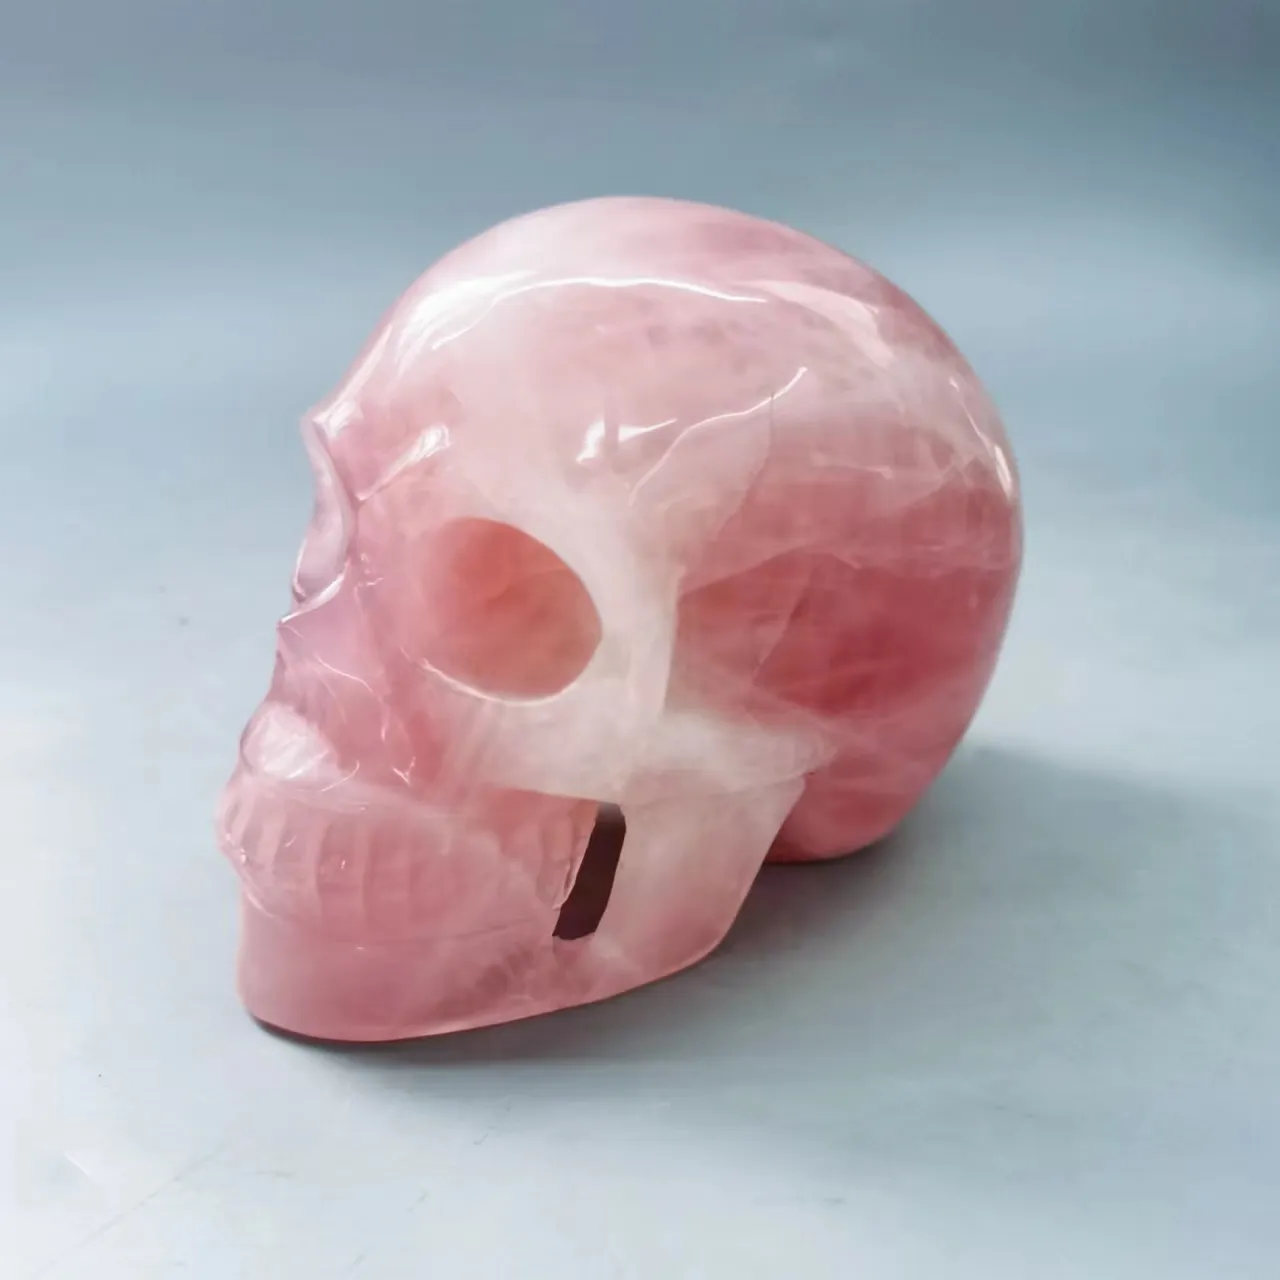 도매 천연 장미 석영 해골 명상 치유 돌 대형 10cm 이상 크리스탈 해골 사용자 정의 수락